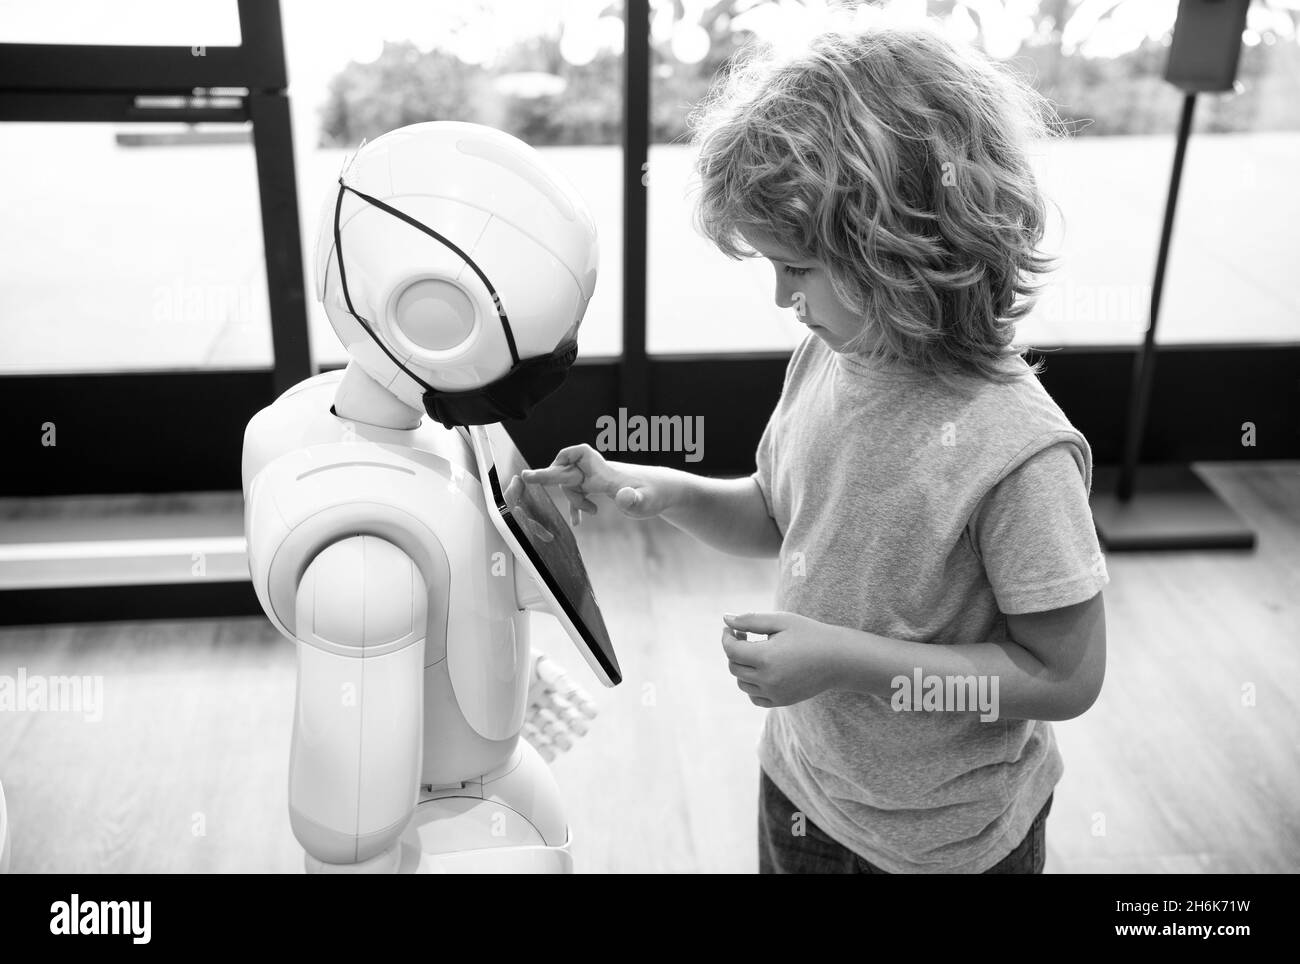 un petit garçon intelligent communique avec la technologie d'assistant robot pour l'éducation moderne, la robotique Banque D'Images